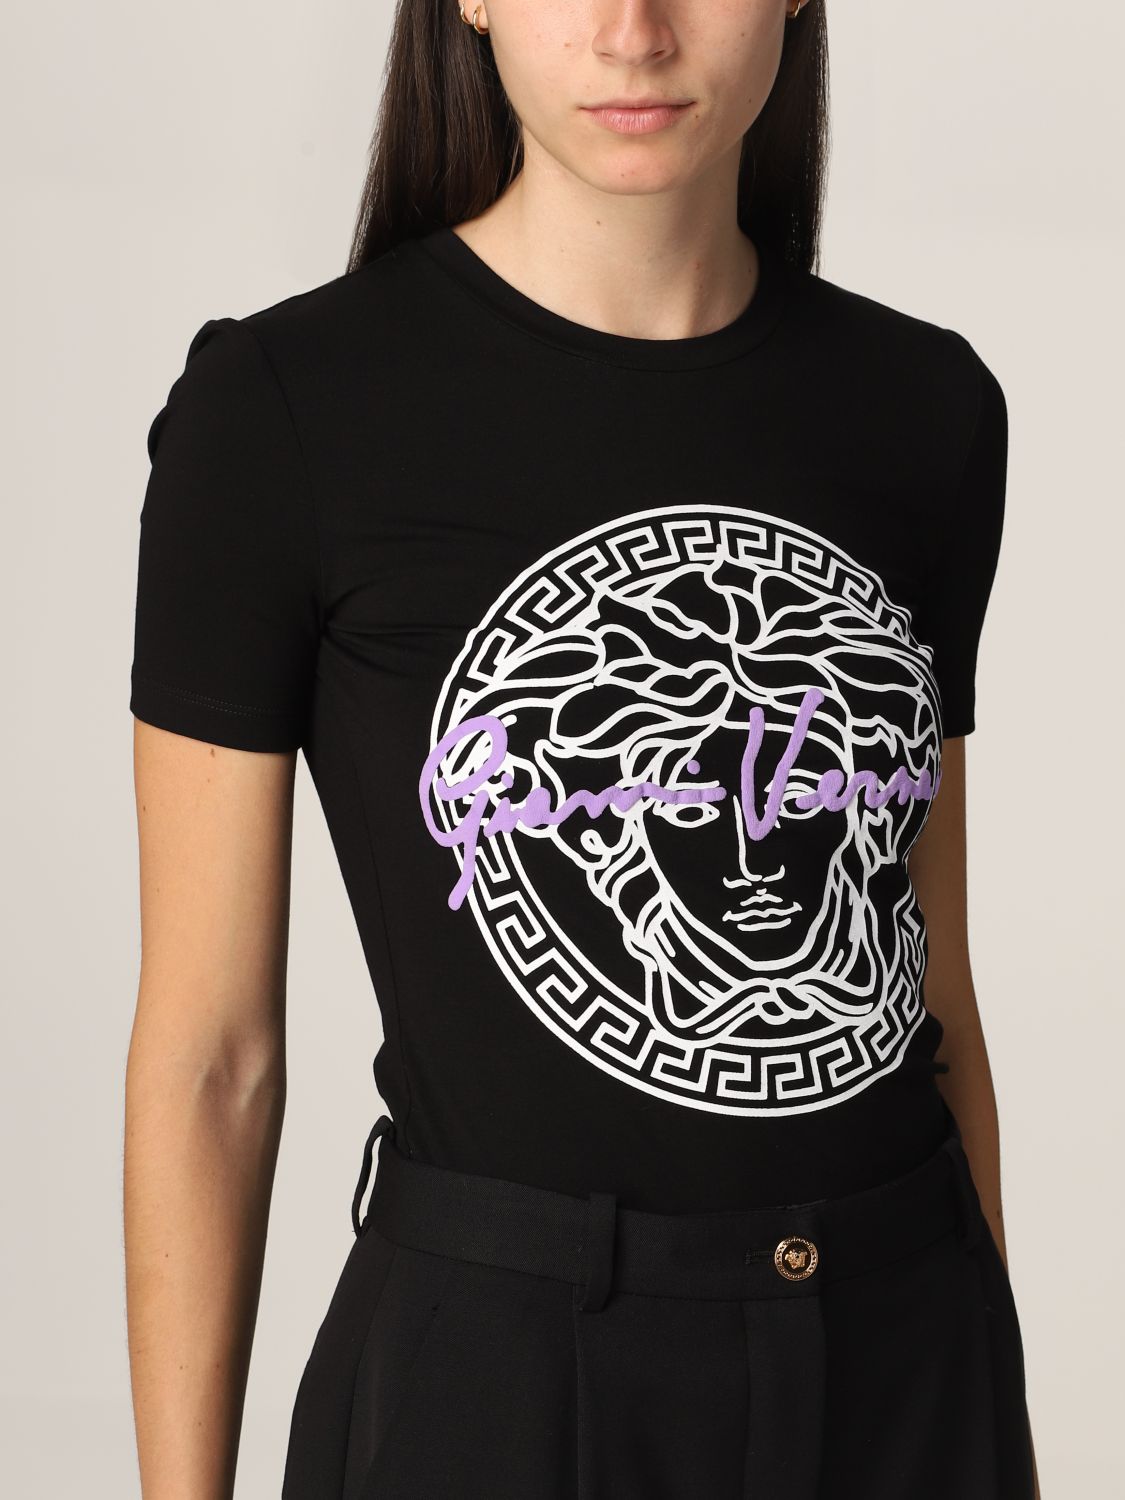 VERSACE: T-shirt with medusa head print | T-Shirt Versace Women Black ...